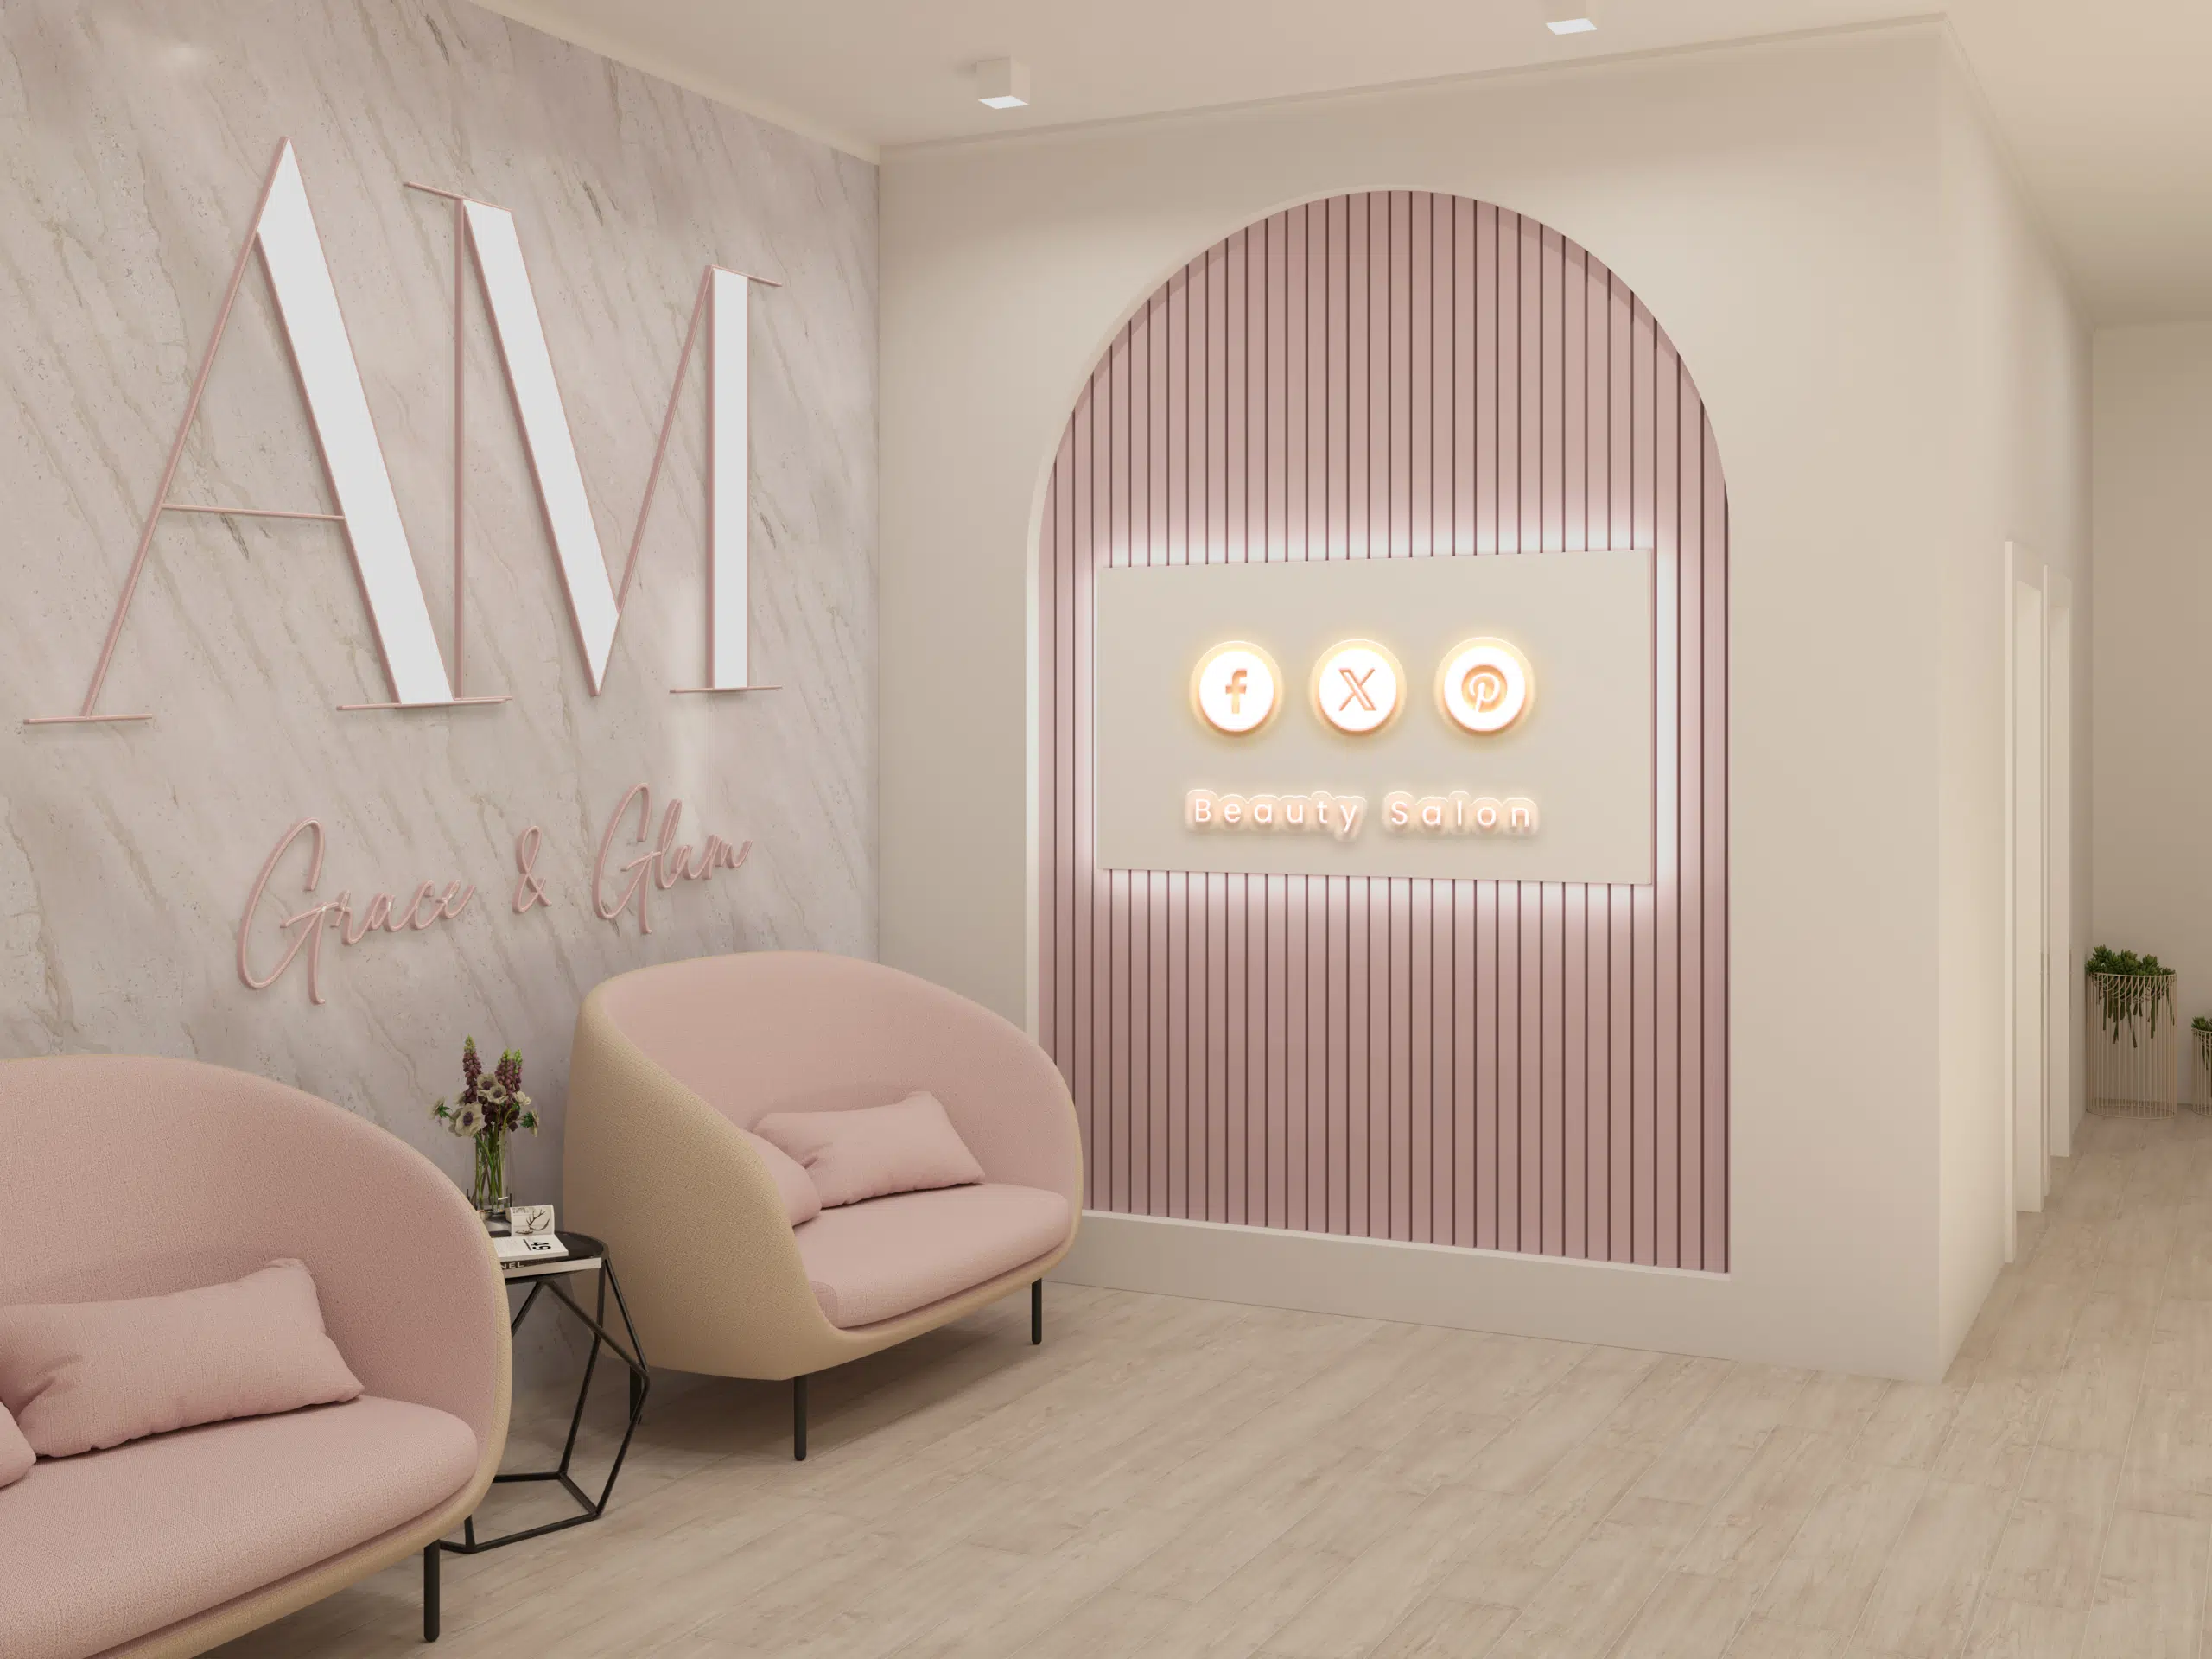 Intérieur d'un salon de beauté moderne avec logo amgrace & glam, offrant une ambiance relaxante et chic pour ses clientes.